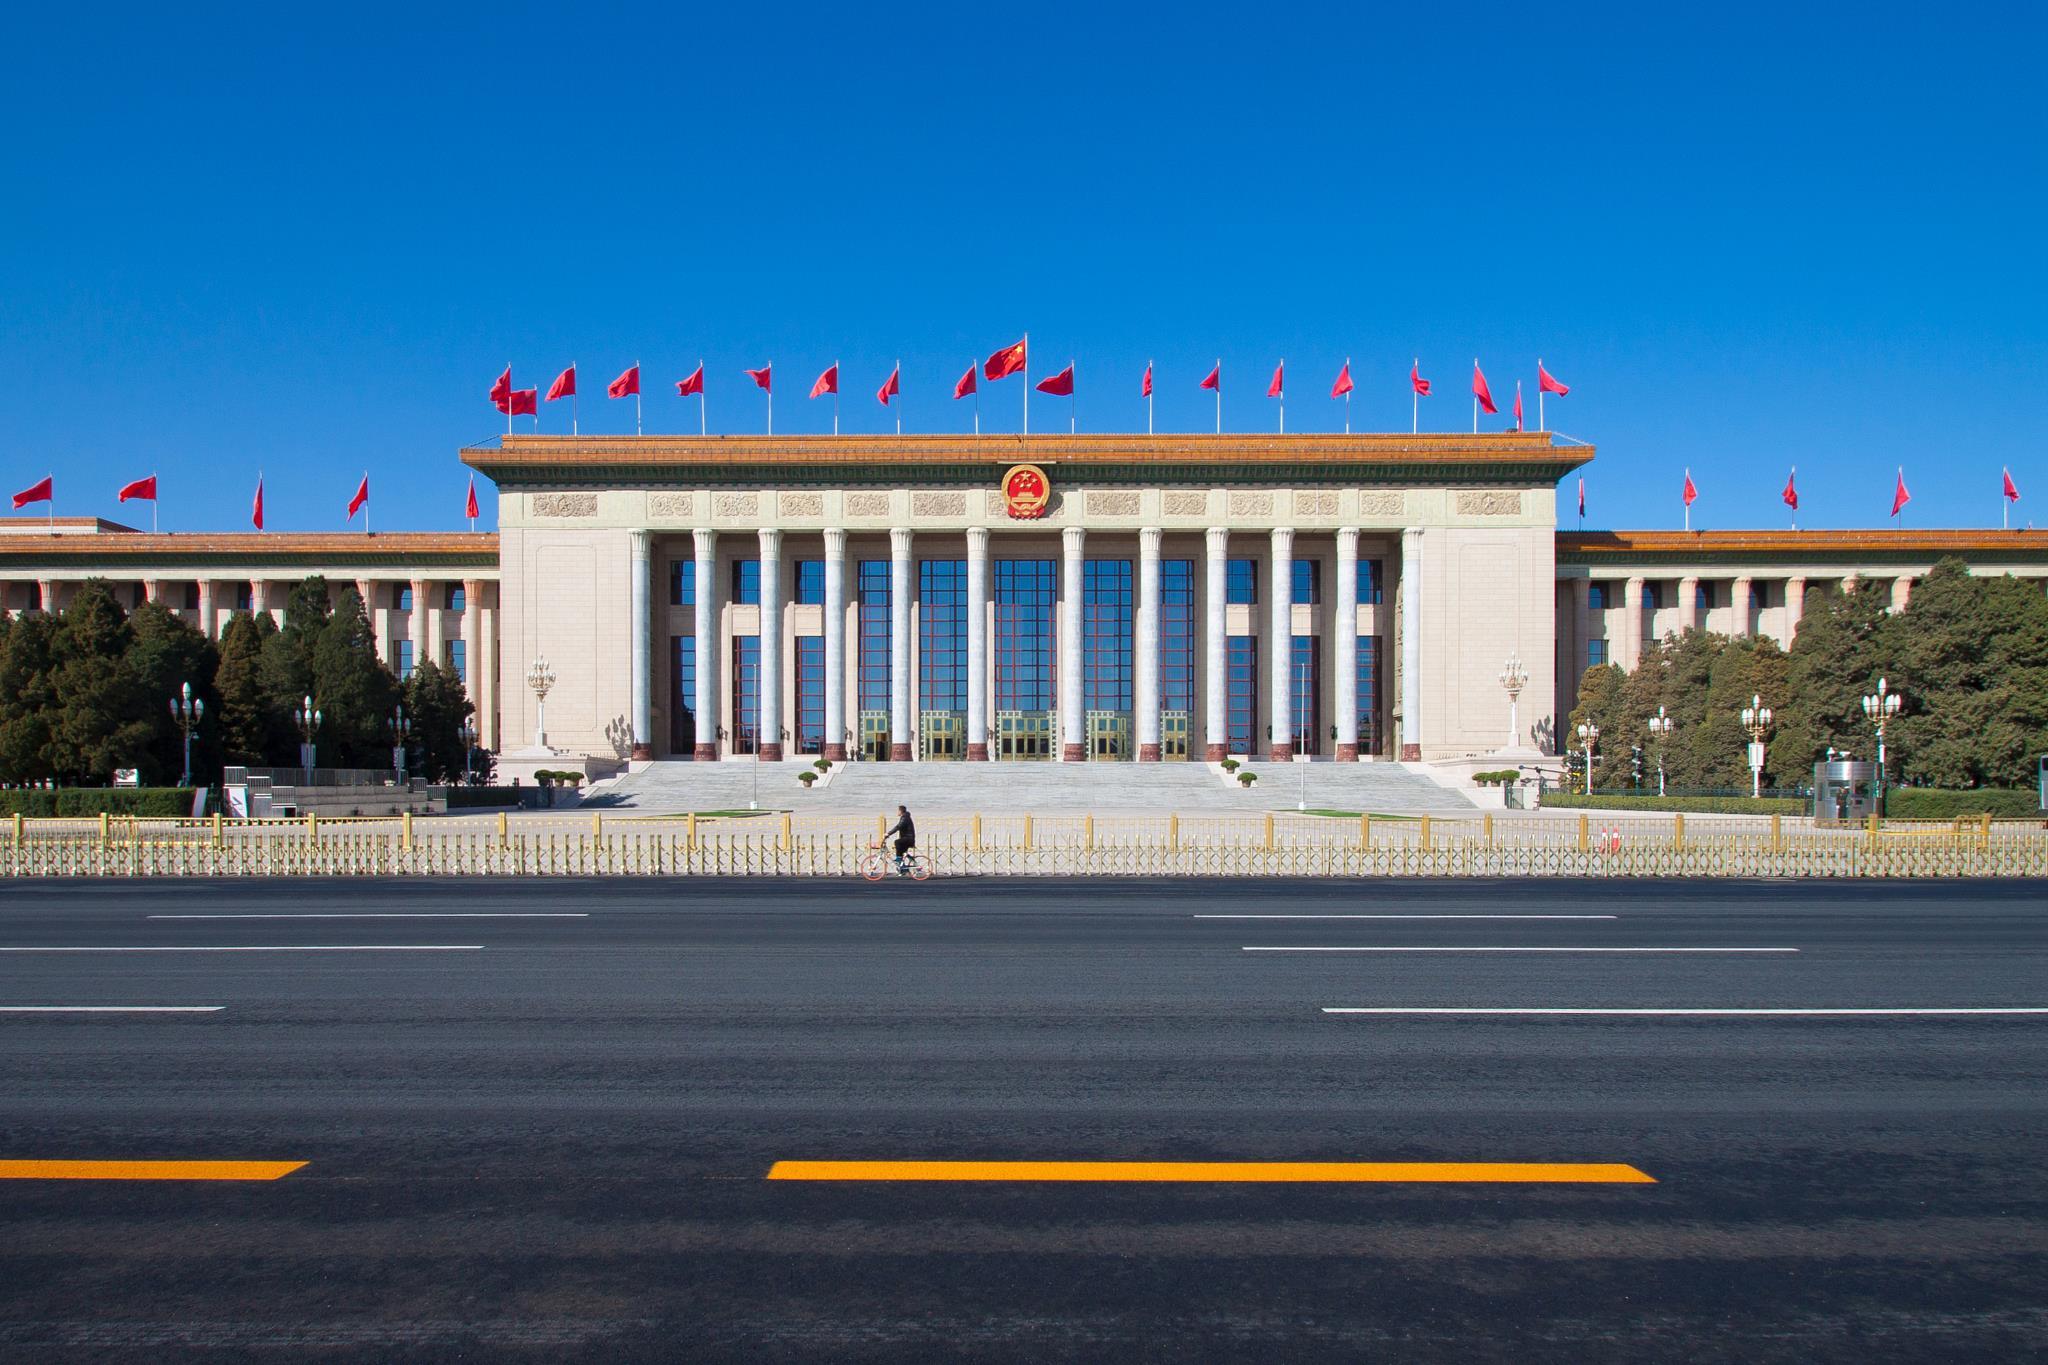 △北京人民大会堂设计中间部分最高，整组建筑平面呈“山”字形。